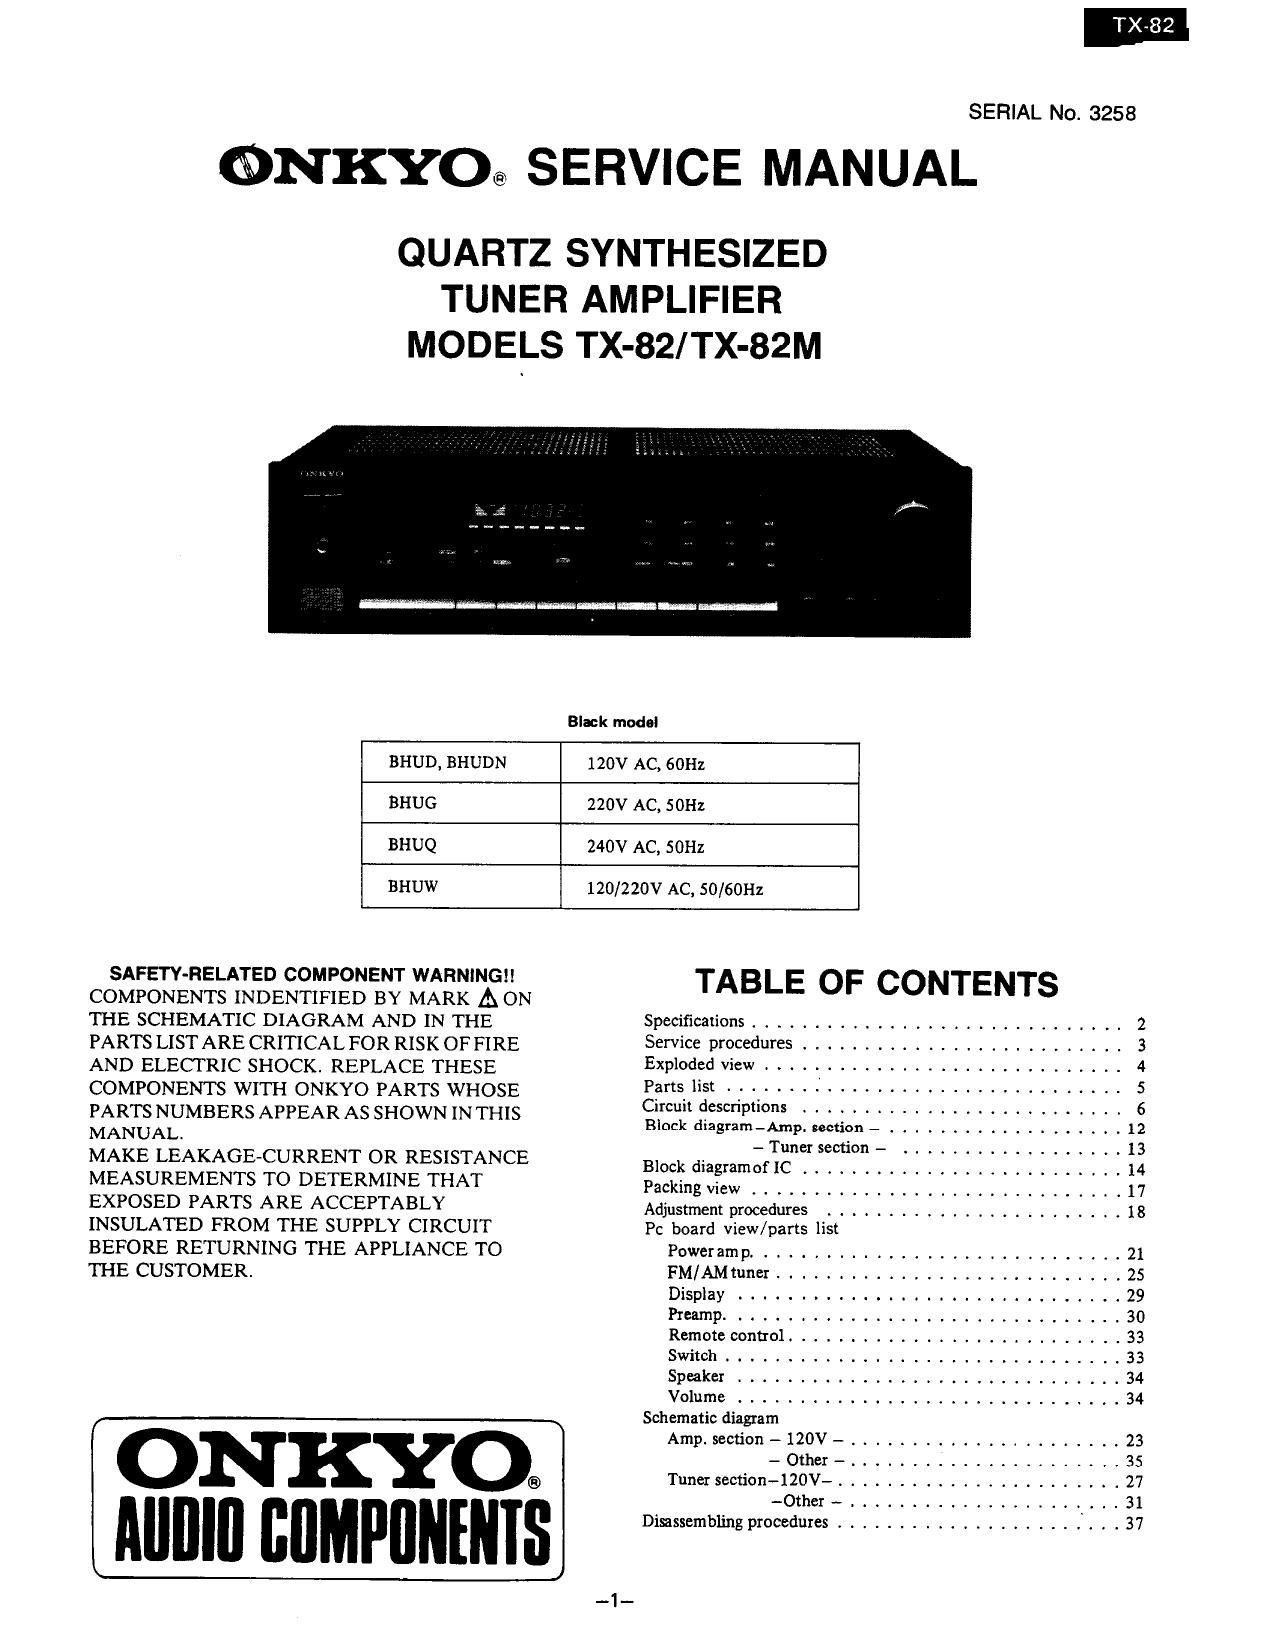 Onkyo TX 82 M Service Manual